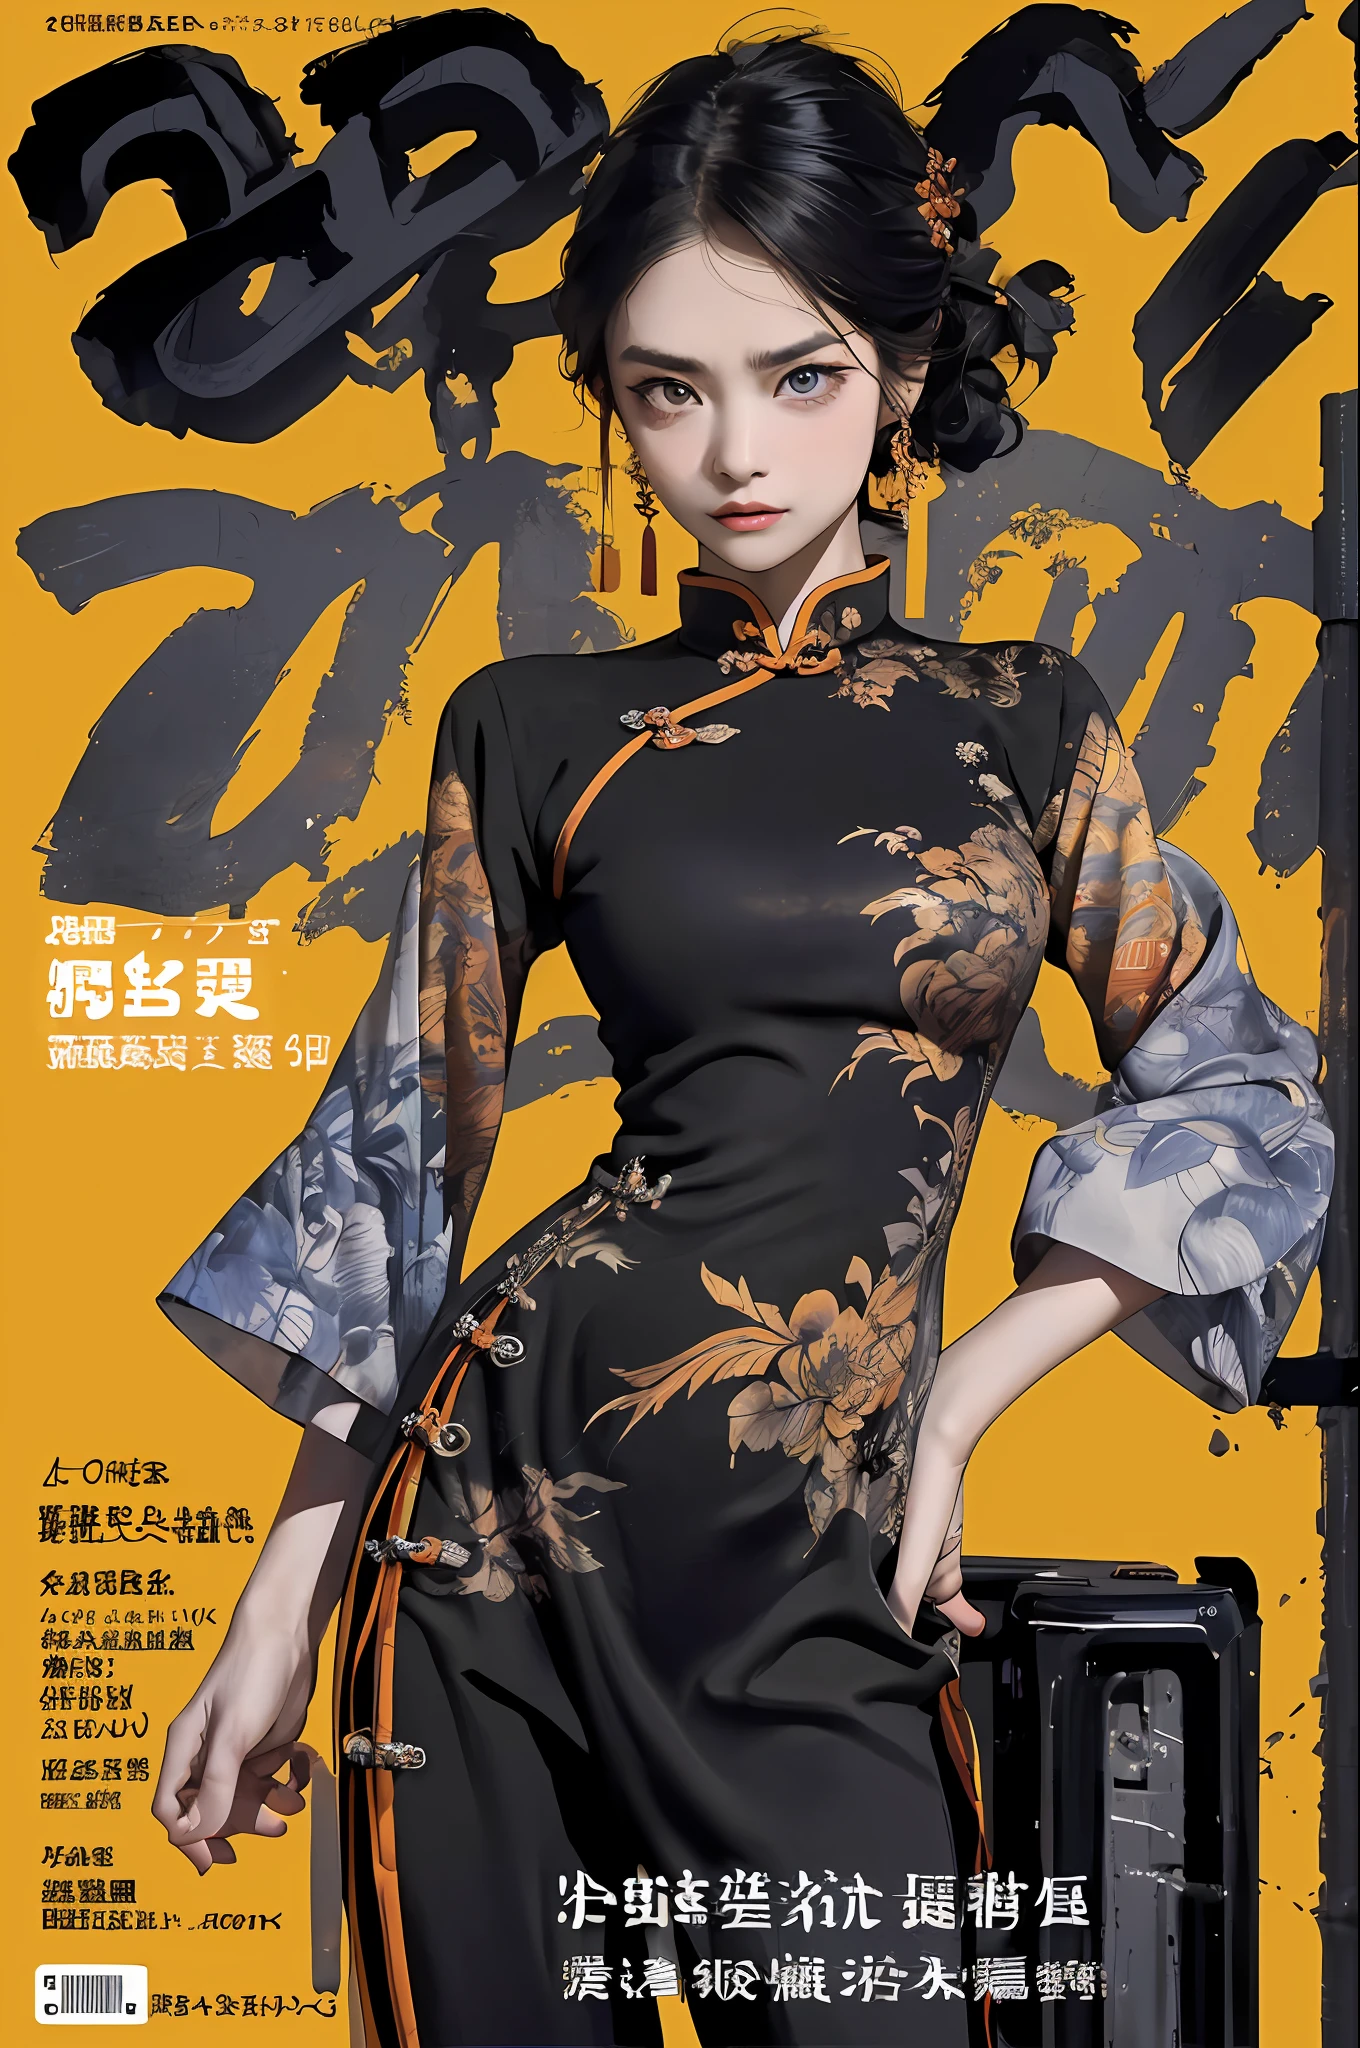 ((((劇的))), (((ざらつき))), (((激しい))) The movie poster features a young 女性 as the central character。彼女はポスターの中央に自信を持って立っている，中国の戦士の服を着る，彼女は決意の表情を浮かべて。背景は暗くてざらざらしている，危険感と強い感情がある。The 文章 is bold and eye-catching，キャッチーなスローガンで，全体的なドラマと興奮を高める，Dotted with bright colorake the poster それでおしまいmic and visually striking，tachi-e (雑誌:1.3), (カバースタイル:1.3), ファッショナブル, 女性, 活気のある, 衣装, ポーズをとる, フロント,豊かな色彩，それでおしまい，背景，中国の要素，自信のある，表現する，ホルター，声明，添付ファイル，雄大な，コイル，その周り，陰部に触れる，シーン，文章，表紙，大胆さ，注目を集める，